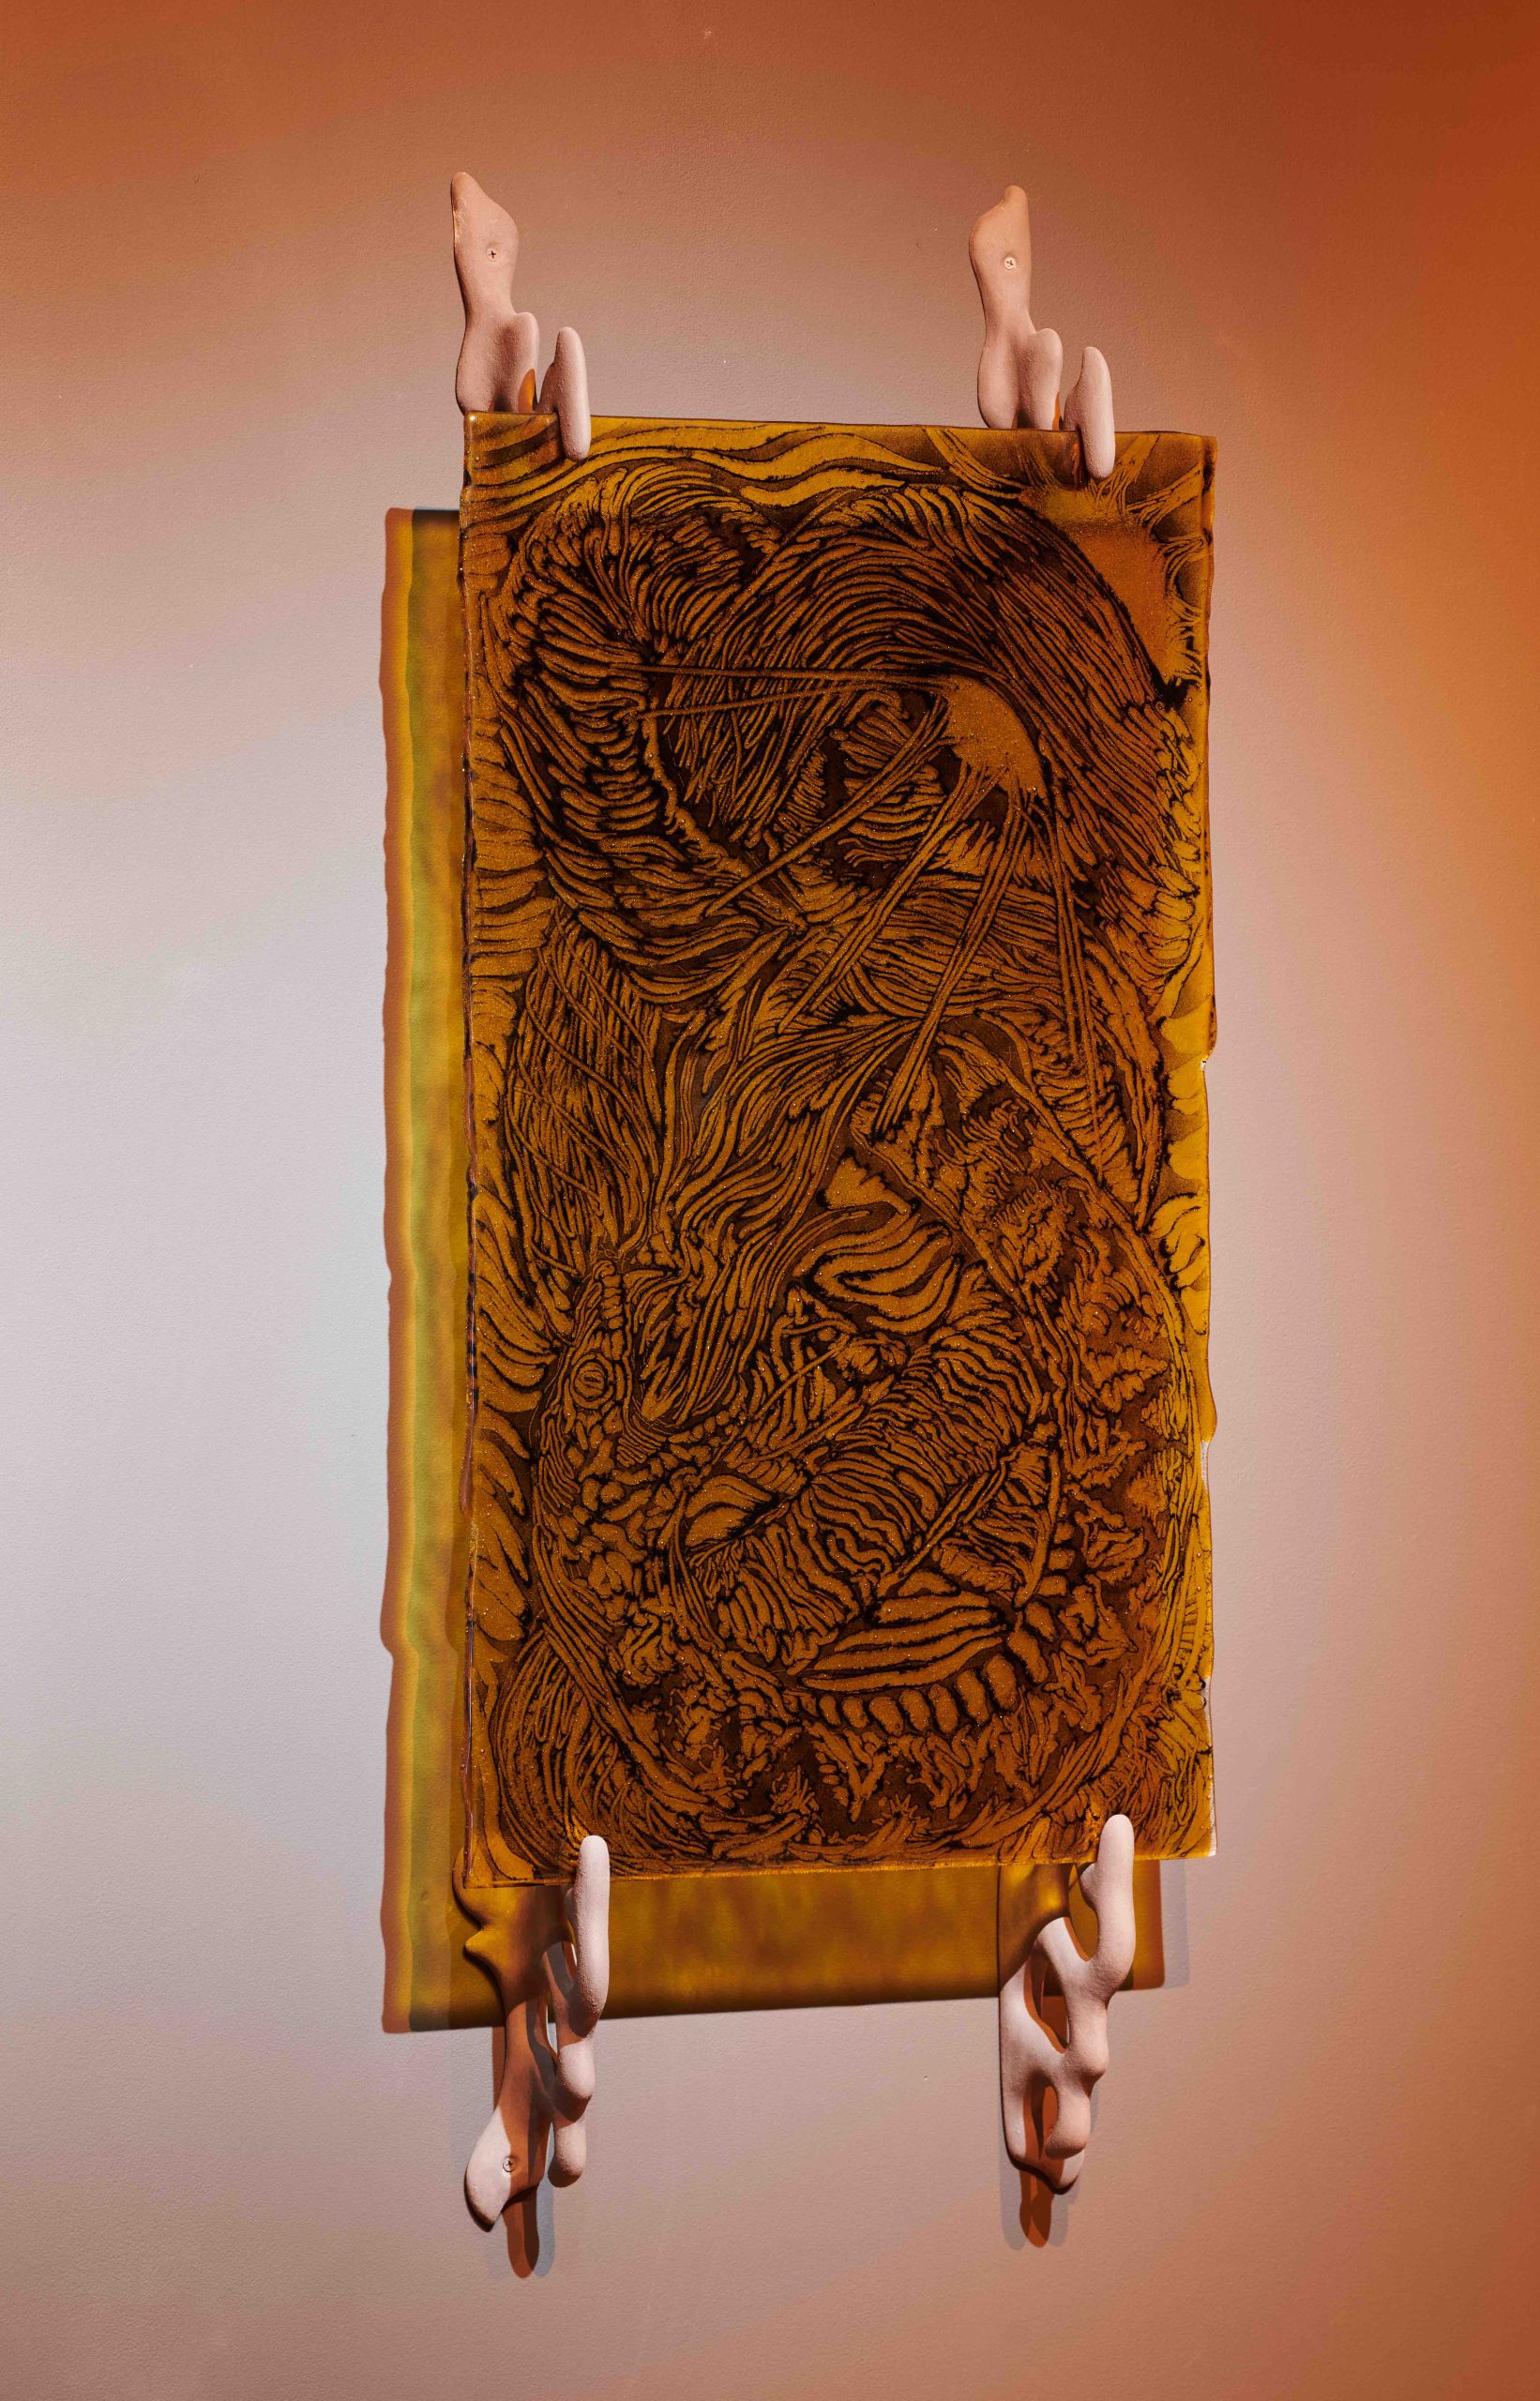 Glassbilde. Orm spiser sin egen hale. Fra utstillingen Oil Nebula av Linda Morell i S12 Galleri og Verksted.